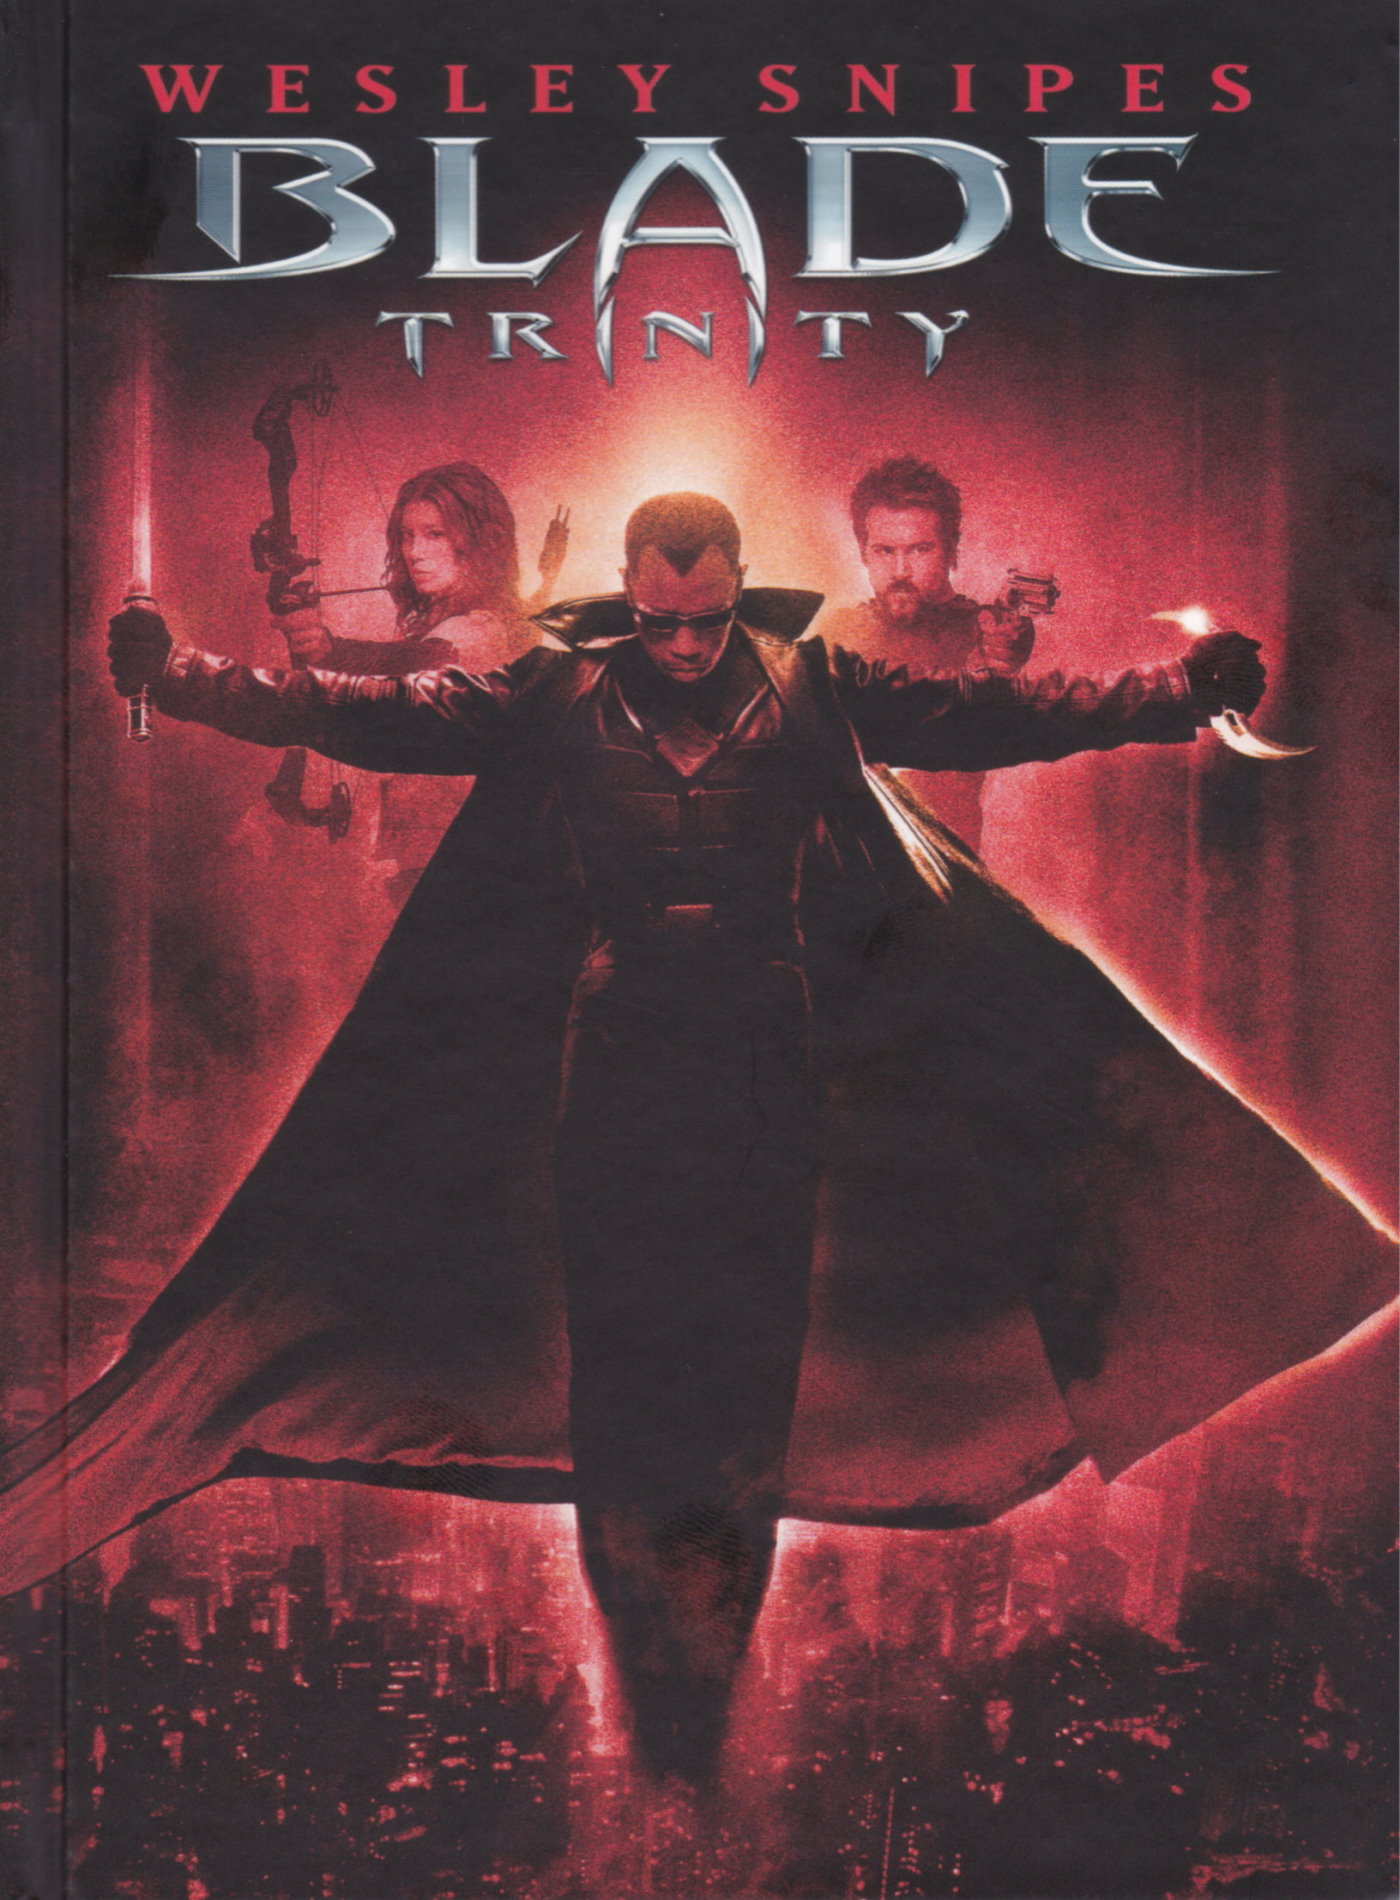 Cover - Blade - Trinity.jpg